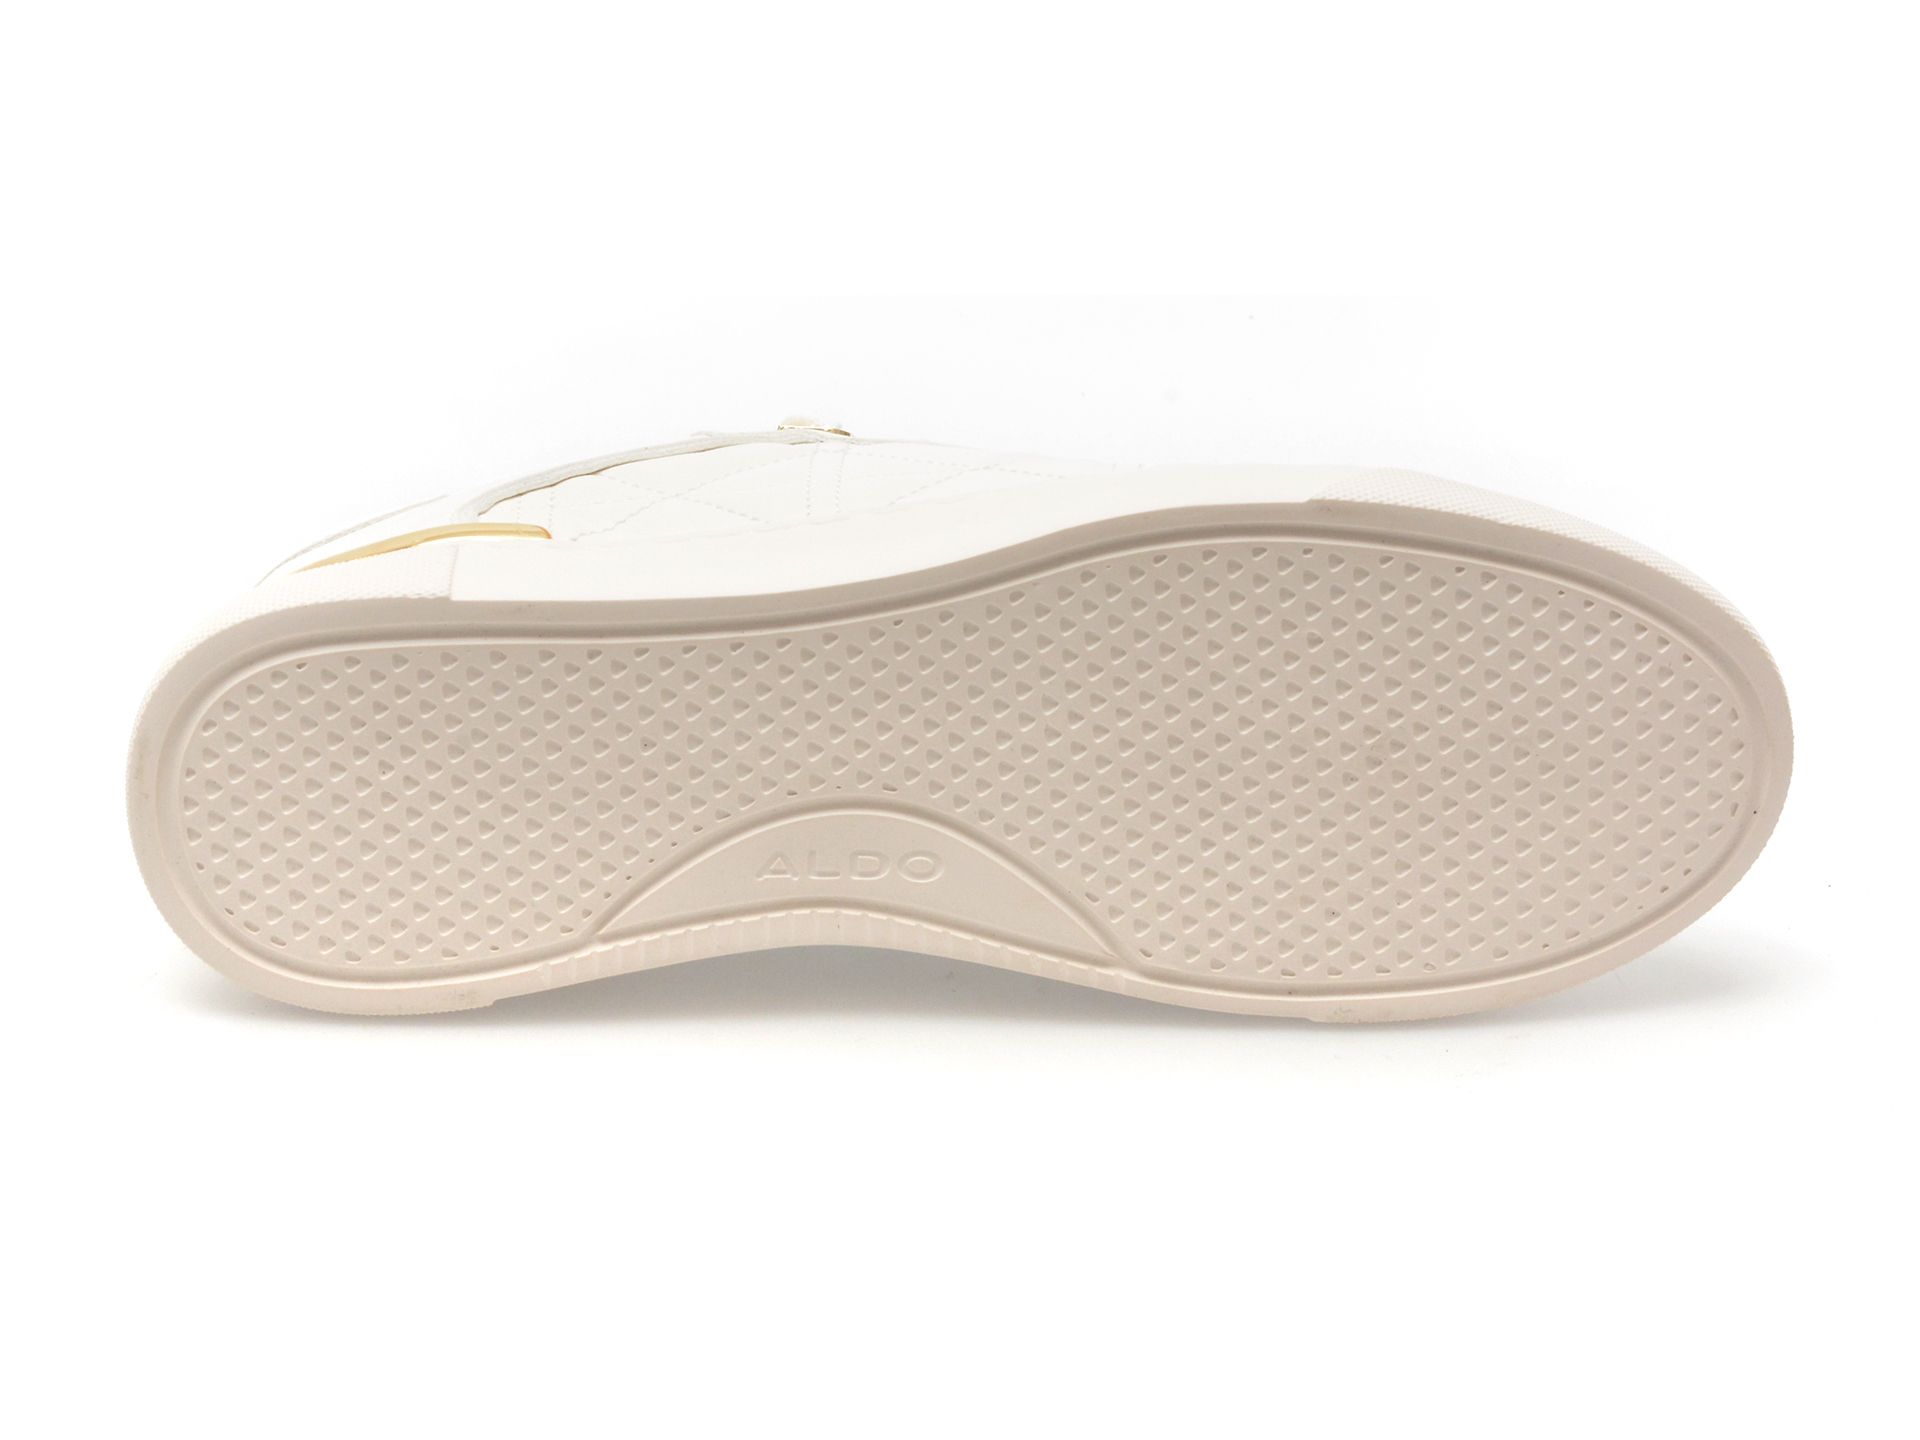 Pantofi ALDO albi, ICONISPEC100, din piele ecologica